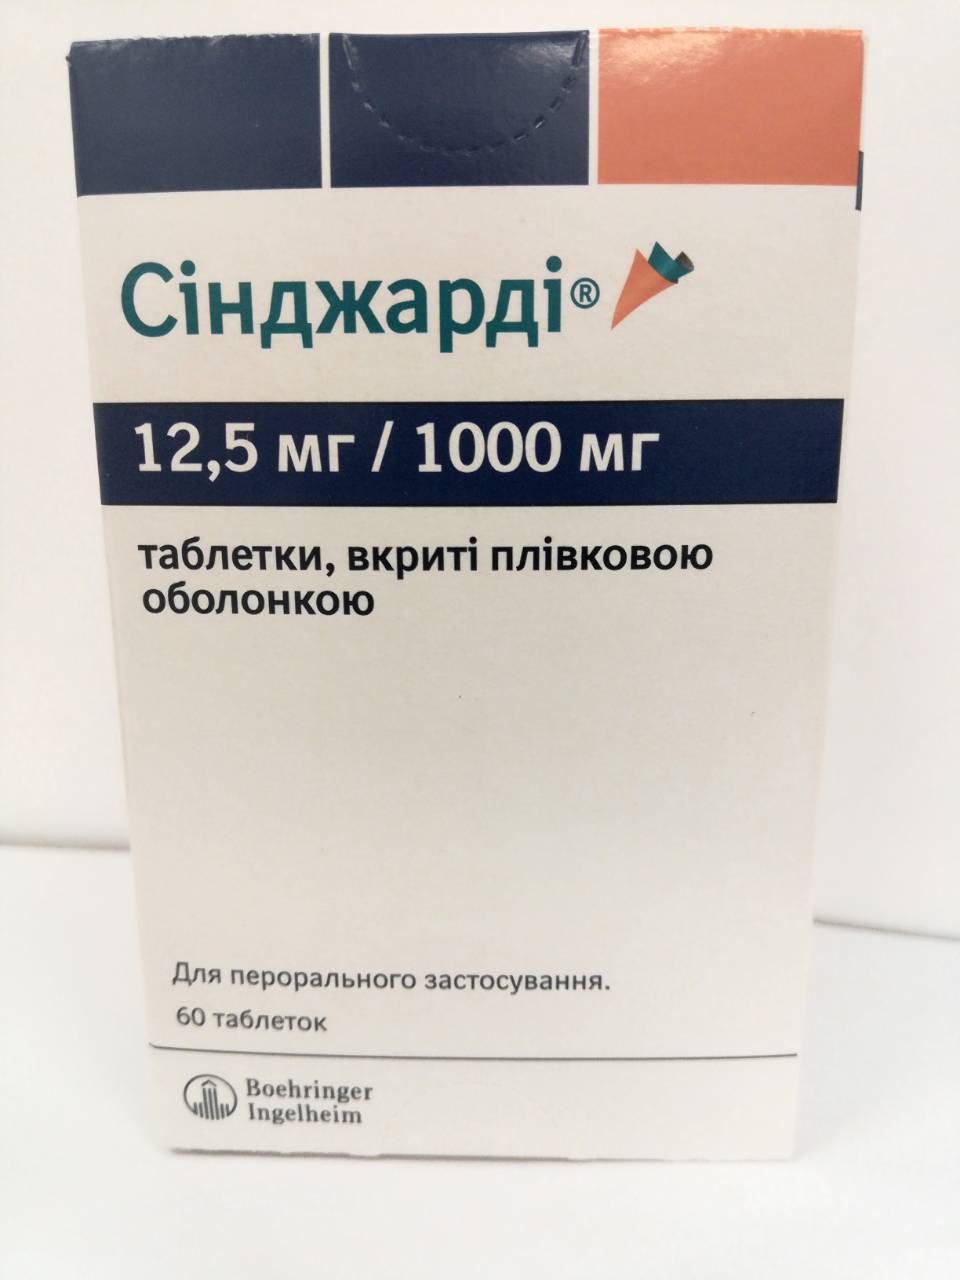 7116 МЕТФОГАМА ® 1000 - Metformin